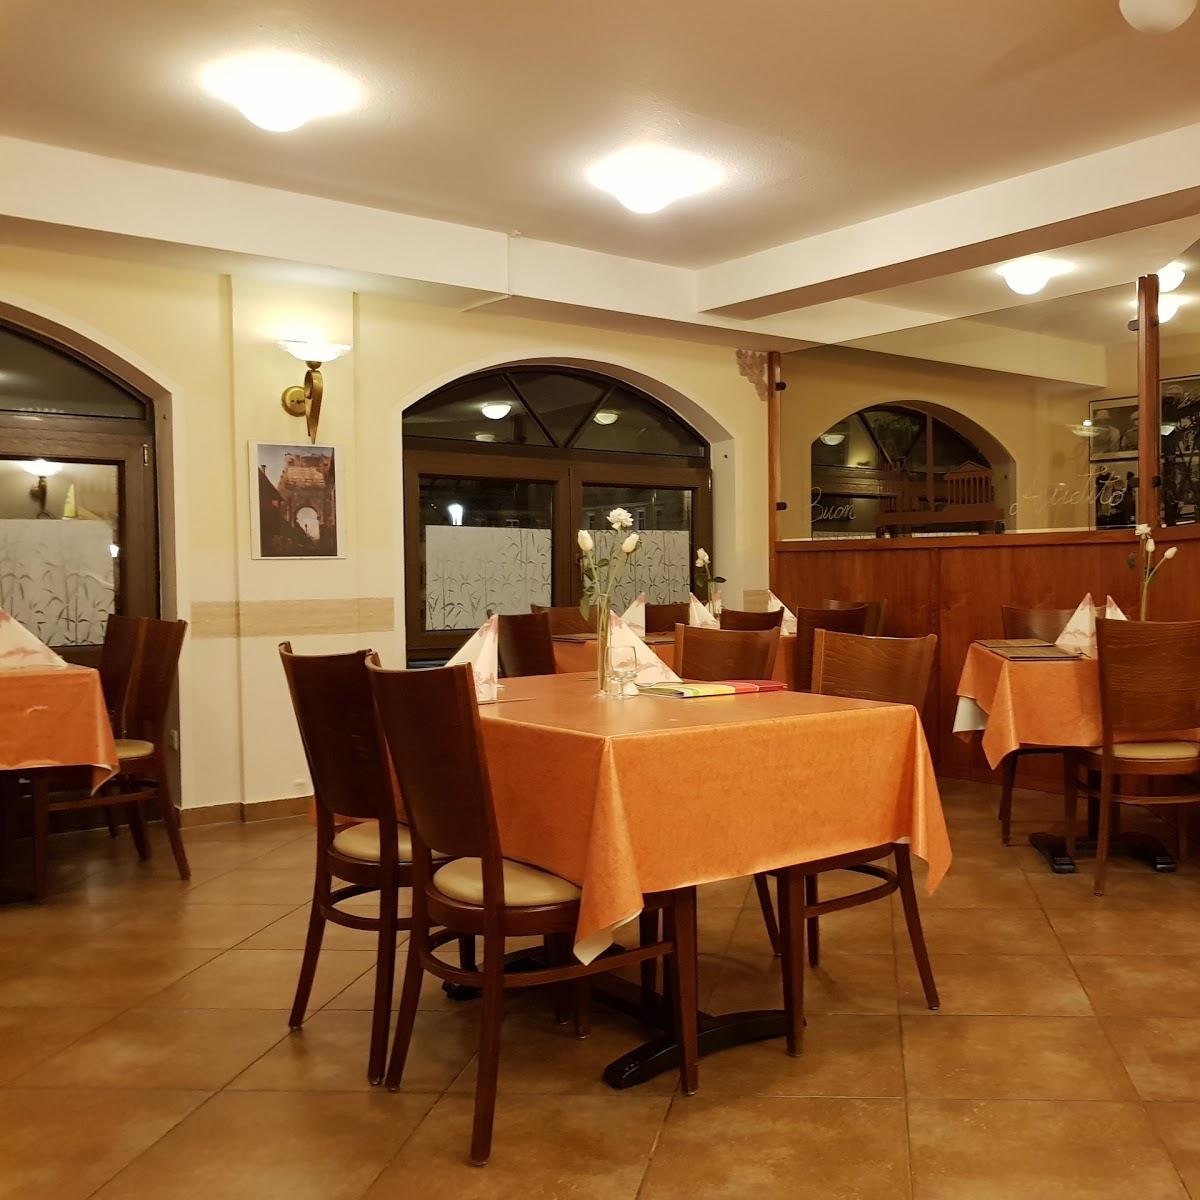 Restaurant "Ristorante Pizzeria Roma" in Weikersheim